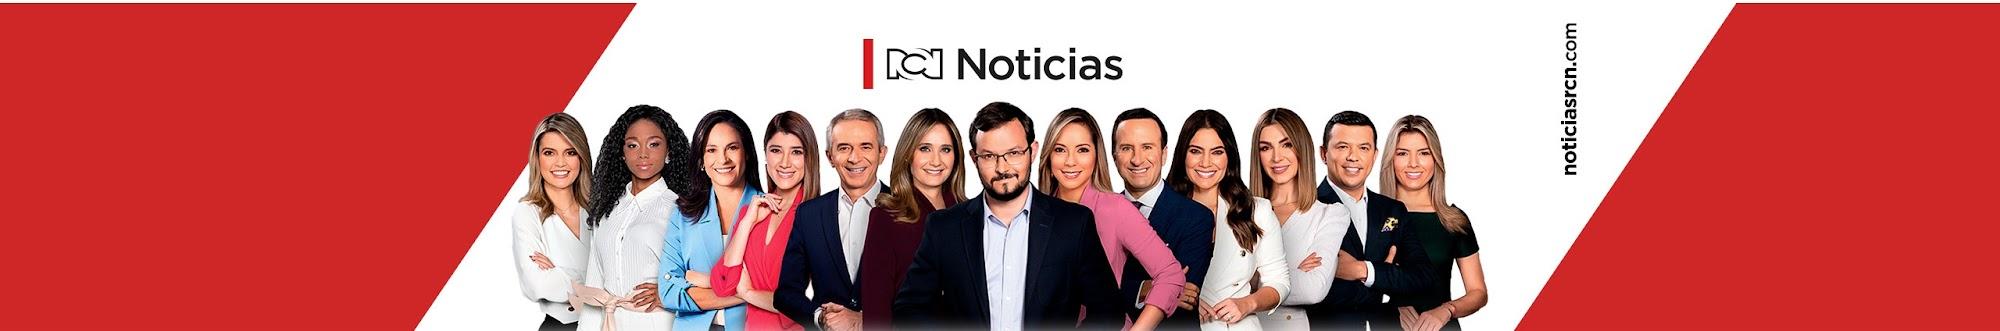 Noticias RCN